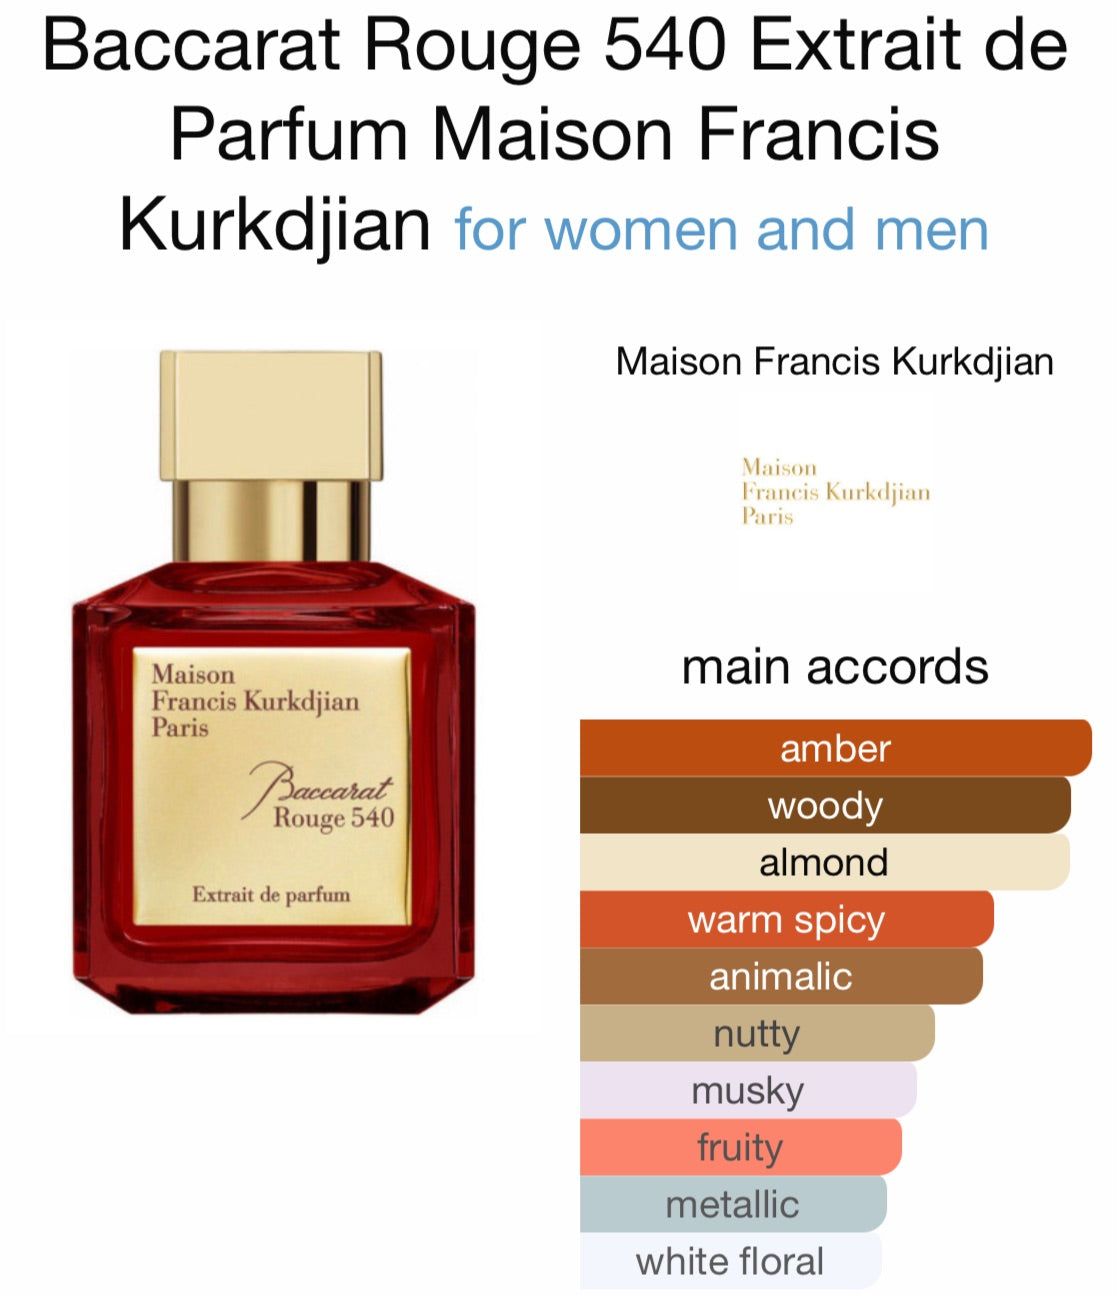 Baccarat Rouge 540 by Maison Francis Kurkdjian Extrait de Parfum 2.4oz New